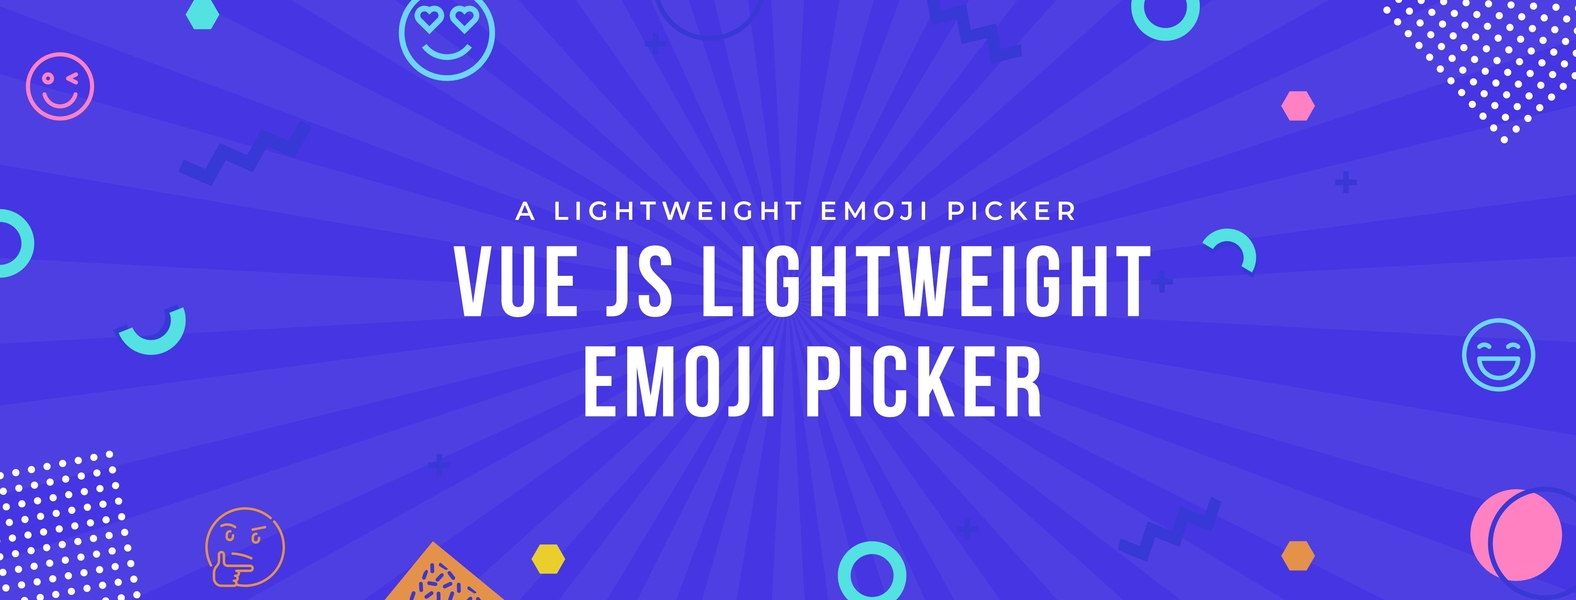 A lightweight emoji picker Component made with Vue js